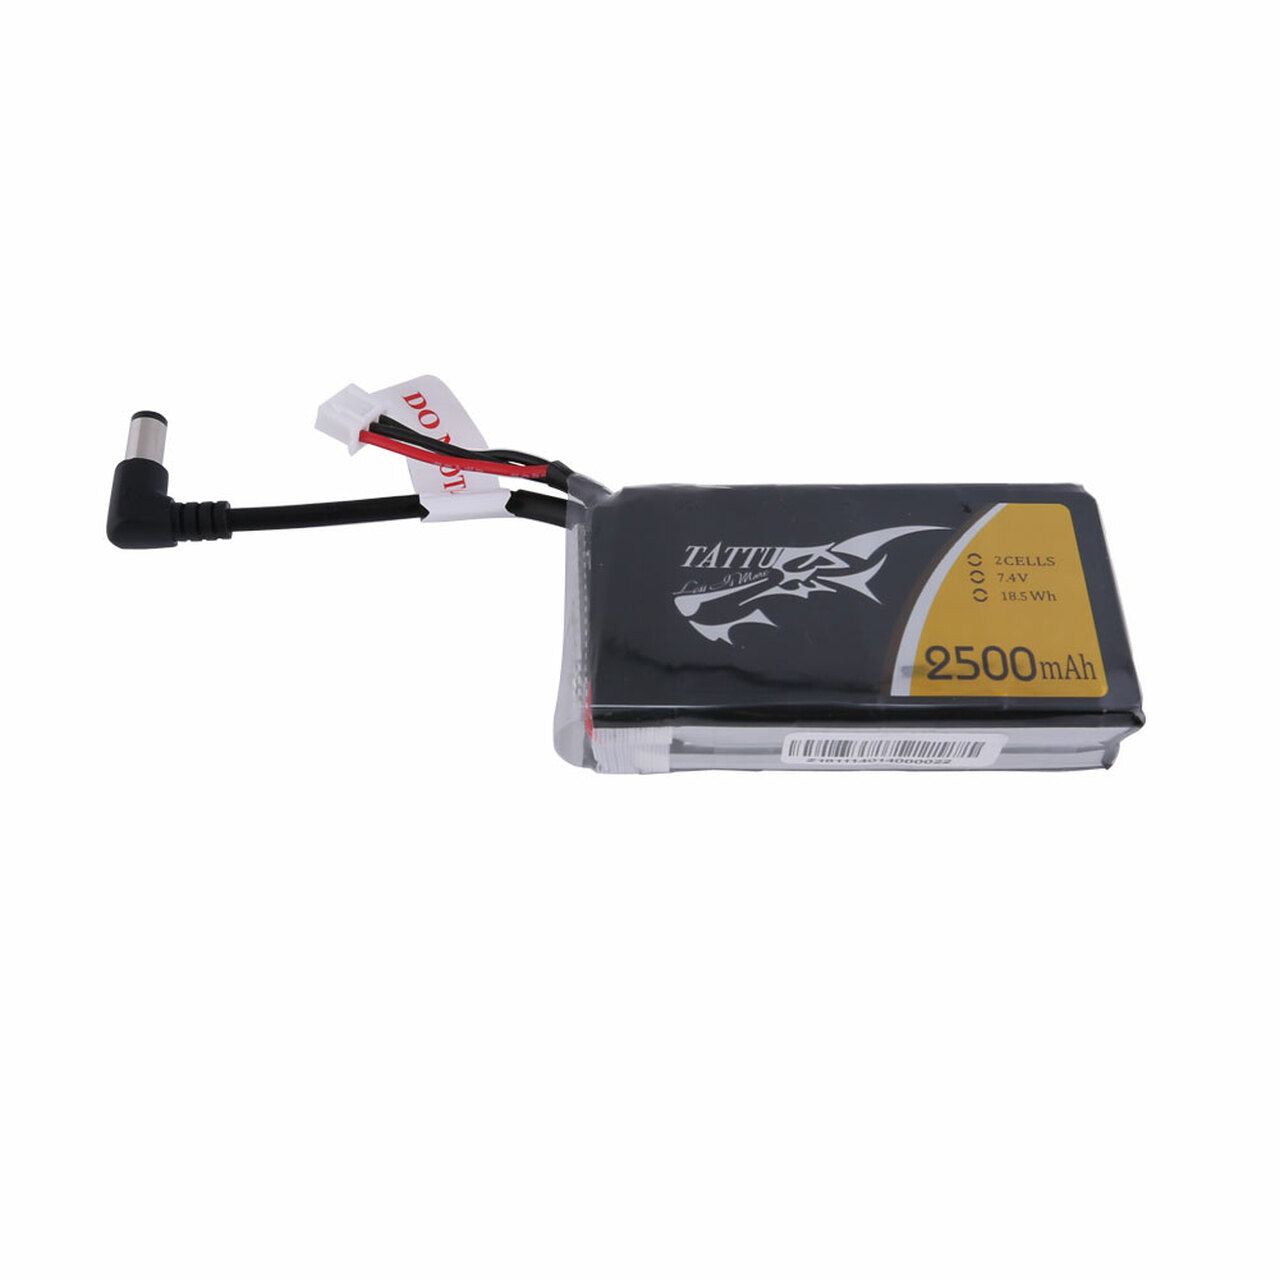 Tattu 2500mAh 2S1P Fatshark Goggles Lipo Battery Pack with DC5.5mm Plug - DroneDynamics.ca